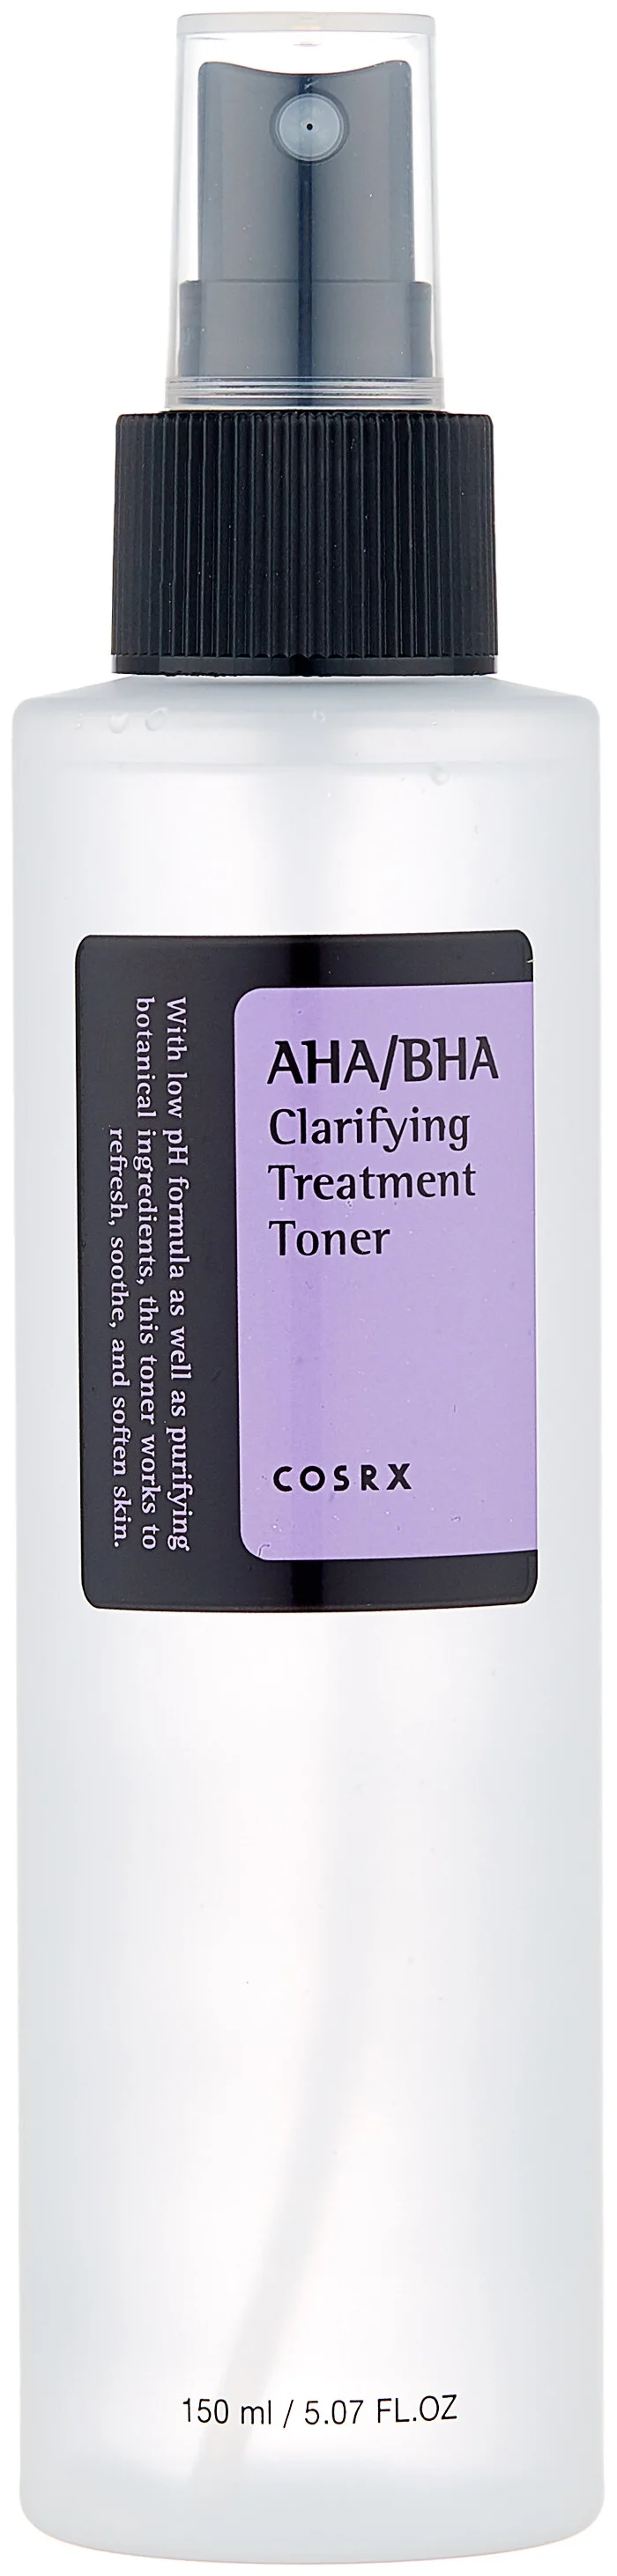 COSRX AHA/BHA Clarifying Treatment